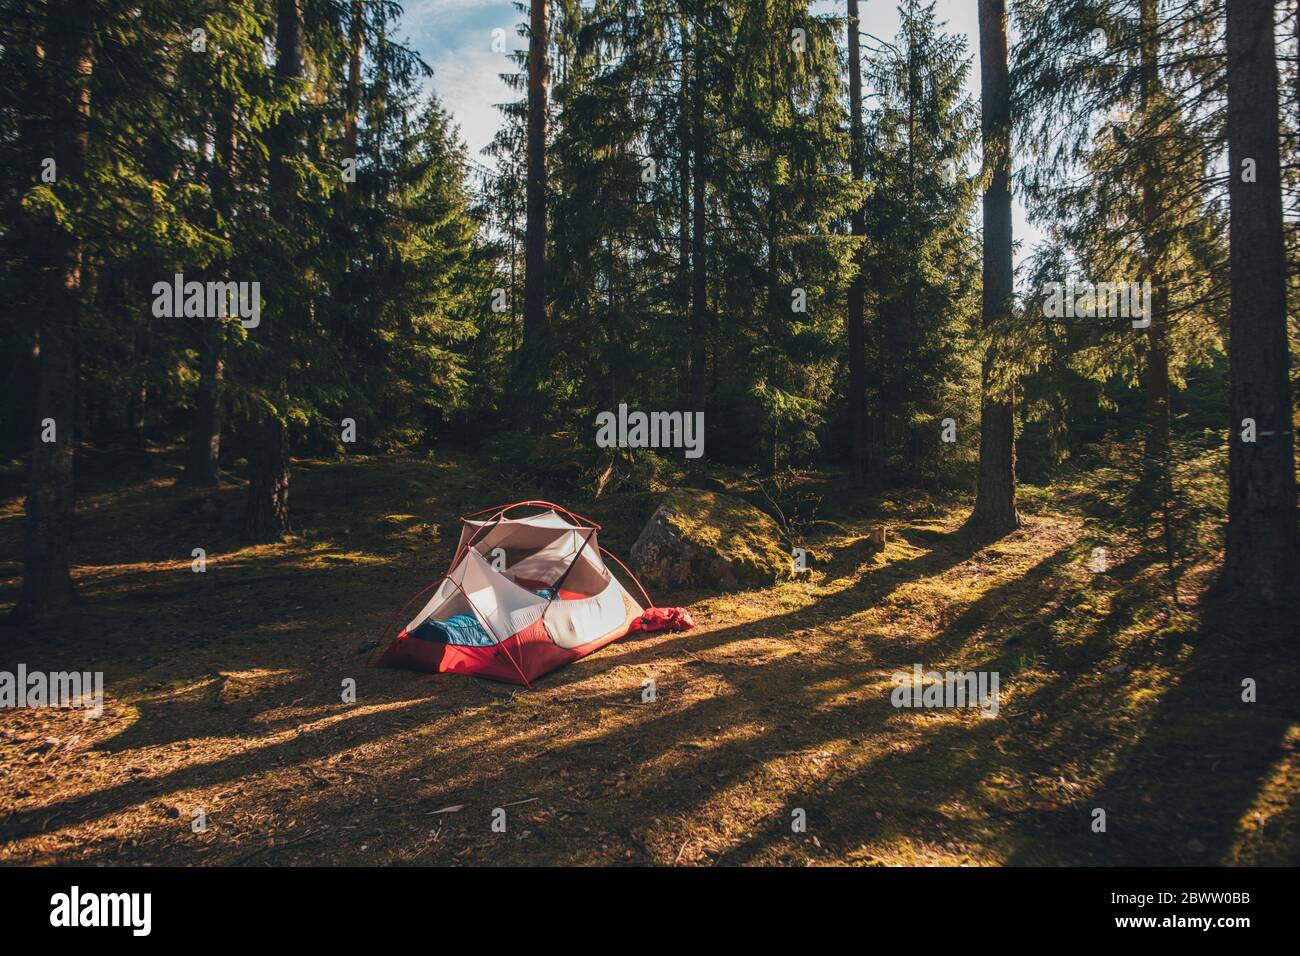 Zelt im Wald, mit einer Person, die im Schlafsack schläft Stockfoto